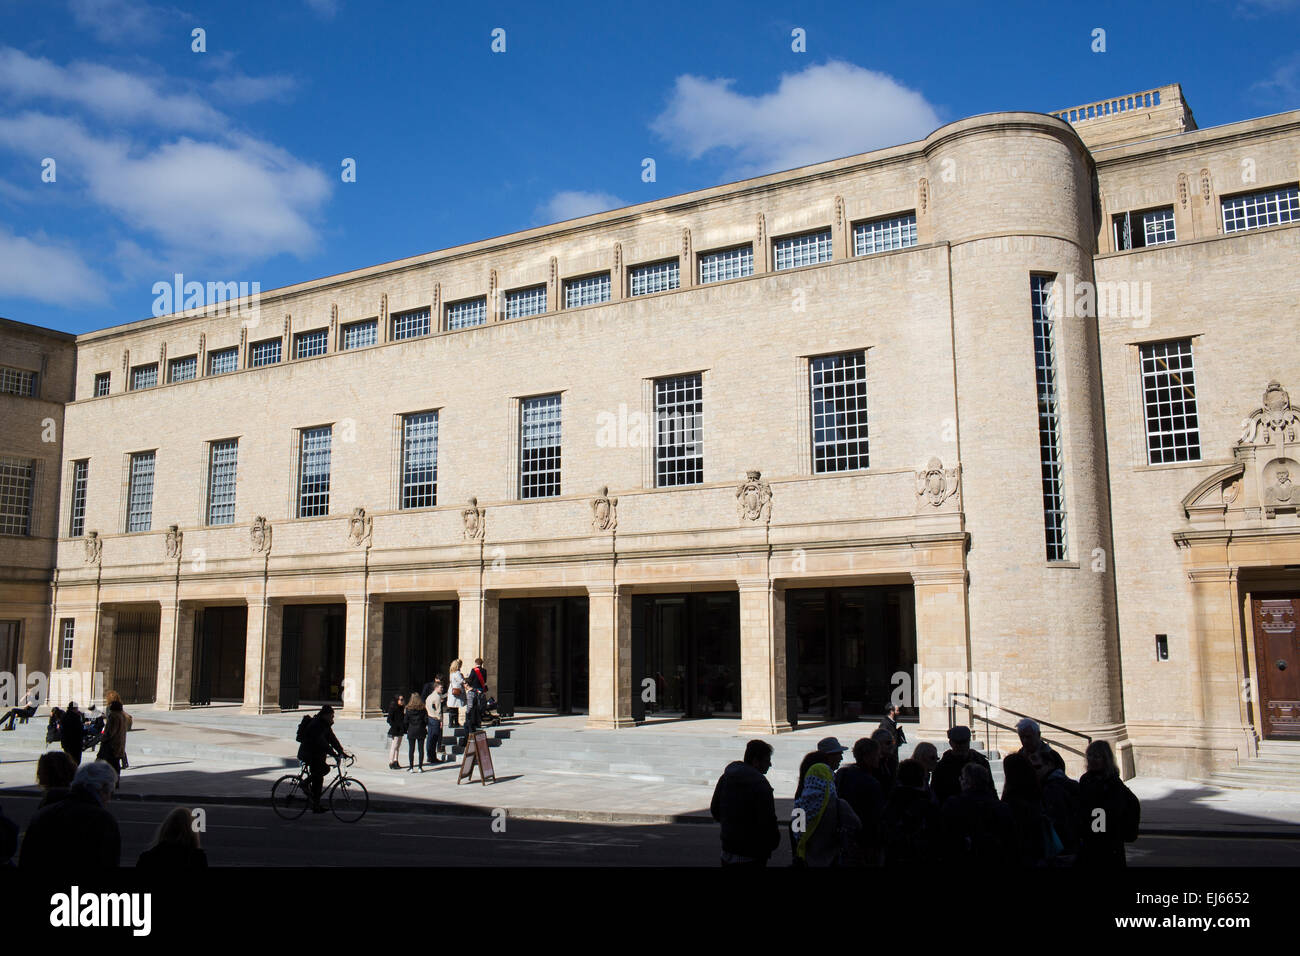 Weston Library à Oxford, Angleterre. Réouvert après une £80 millions de lifting. Banque D'Images